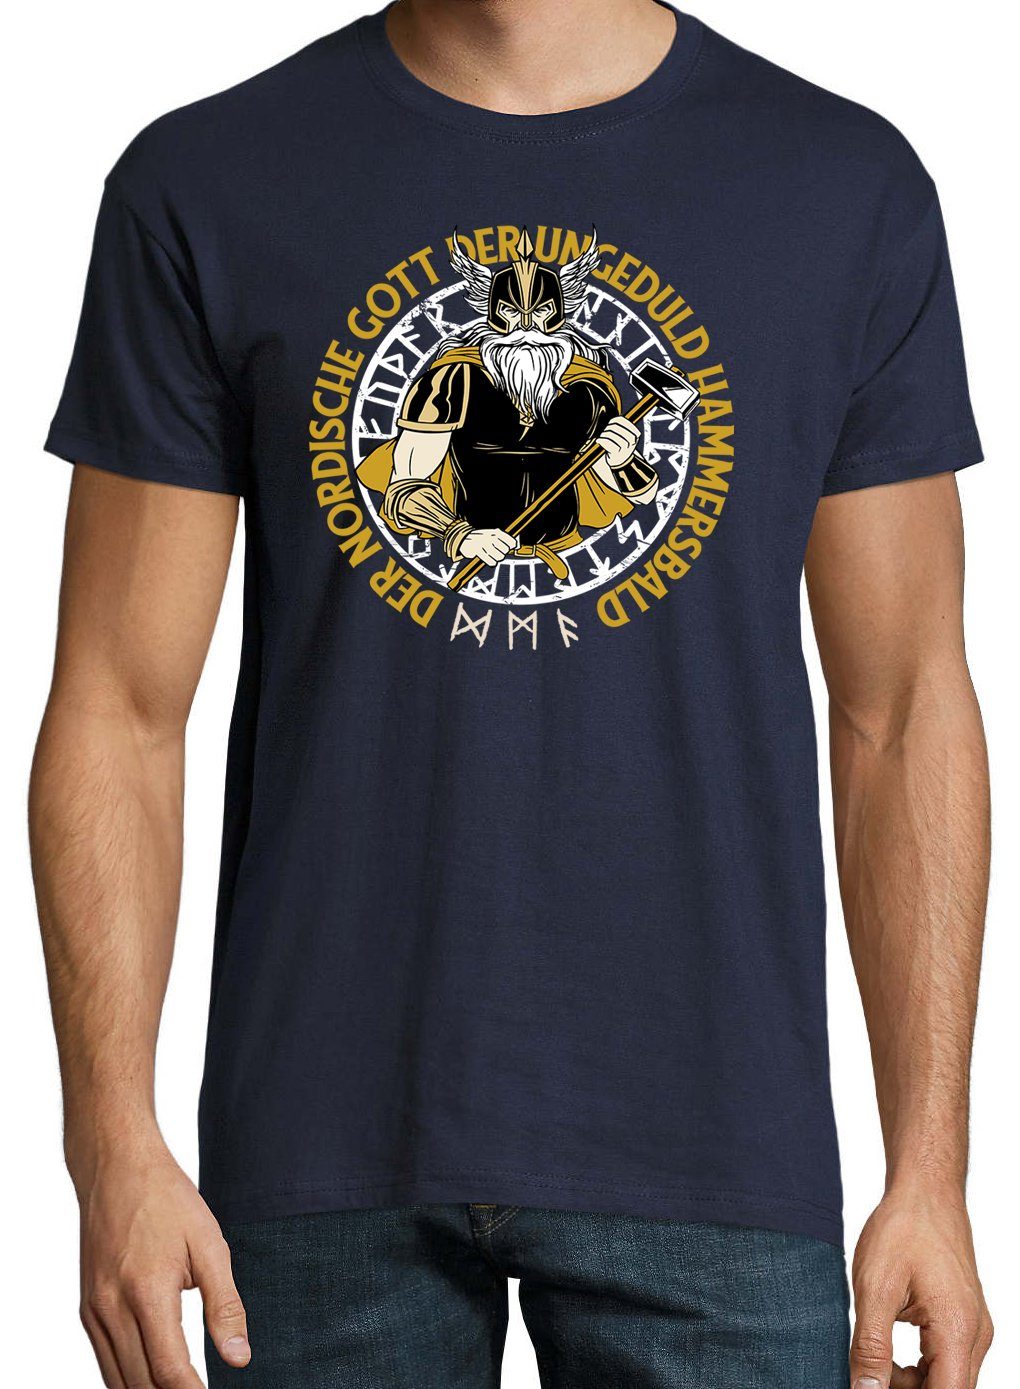 trendigem T-Shirt Frontprint Hammersbald Designz Gott Nordische mit Navyblau Shirt Herren Der Youth